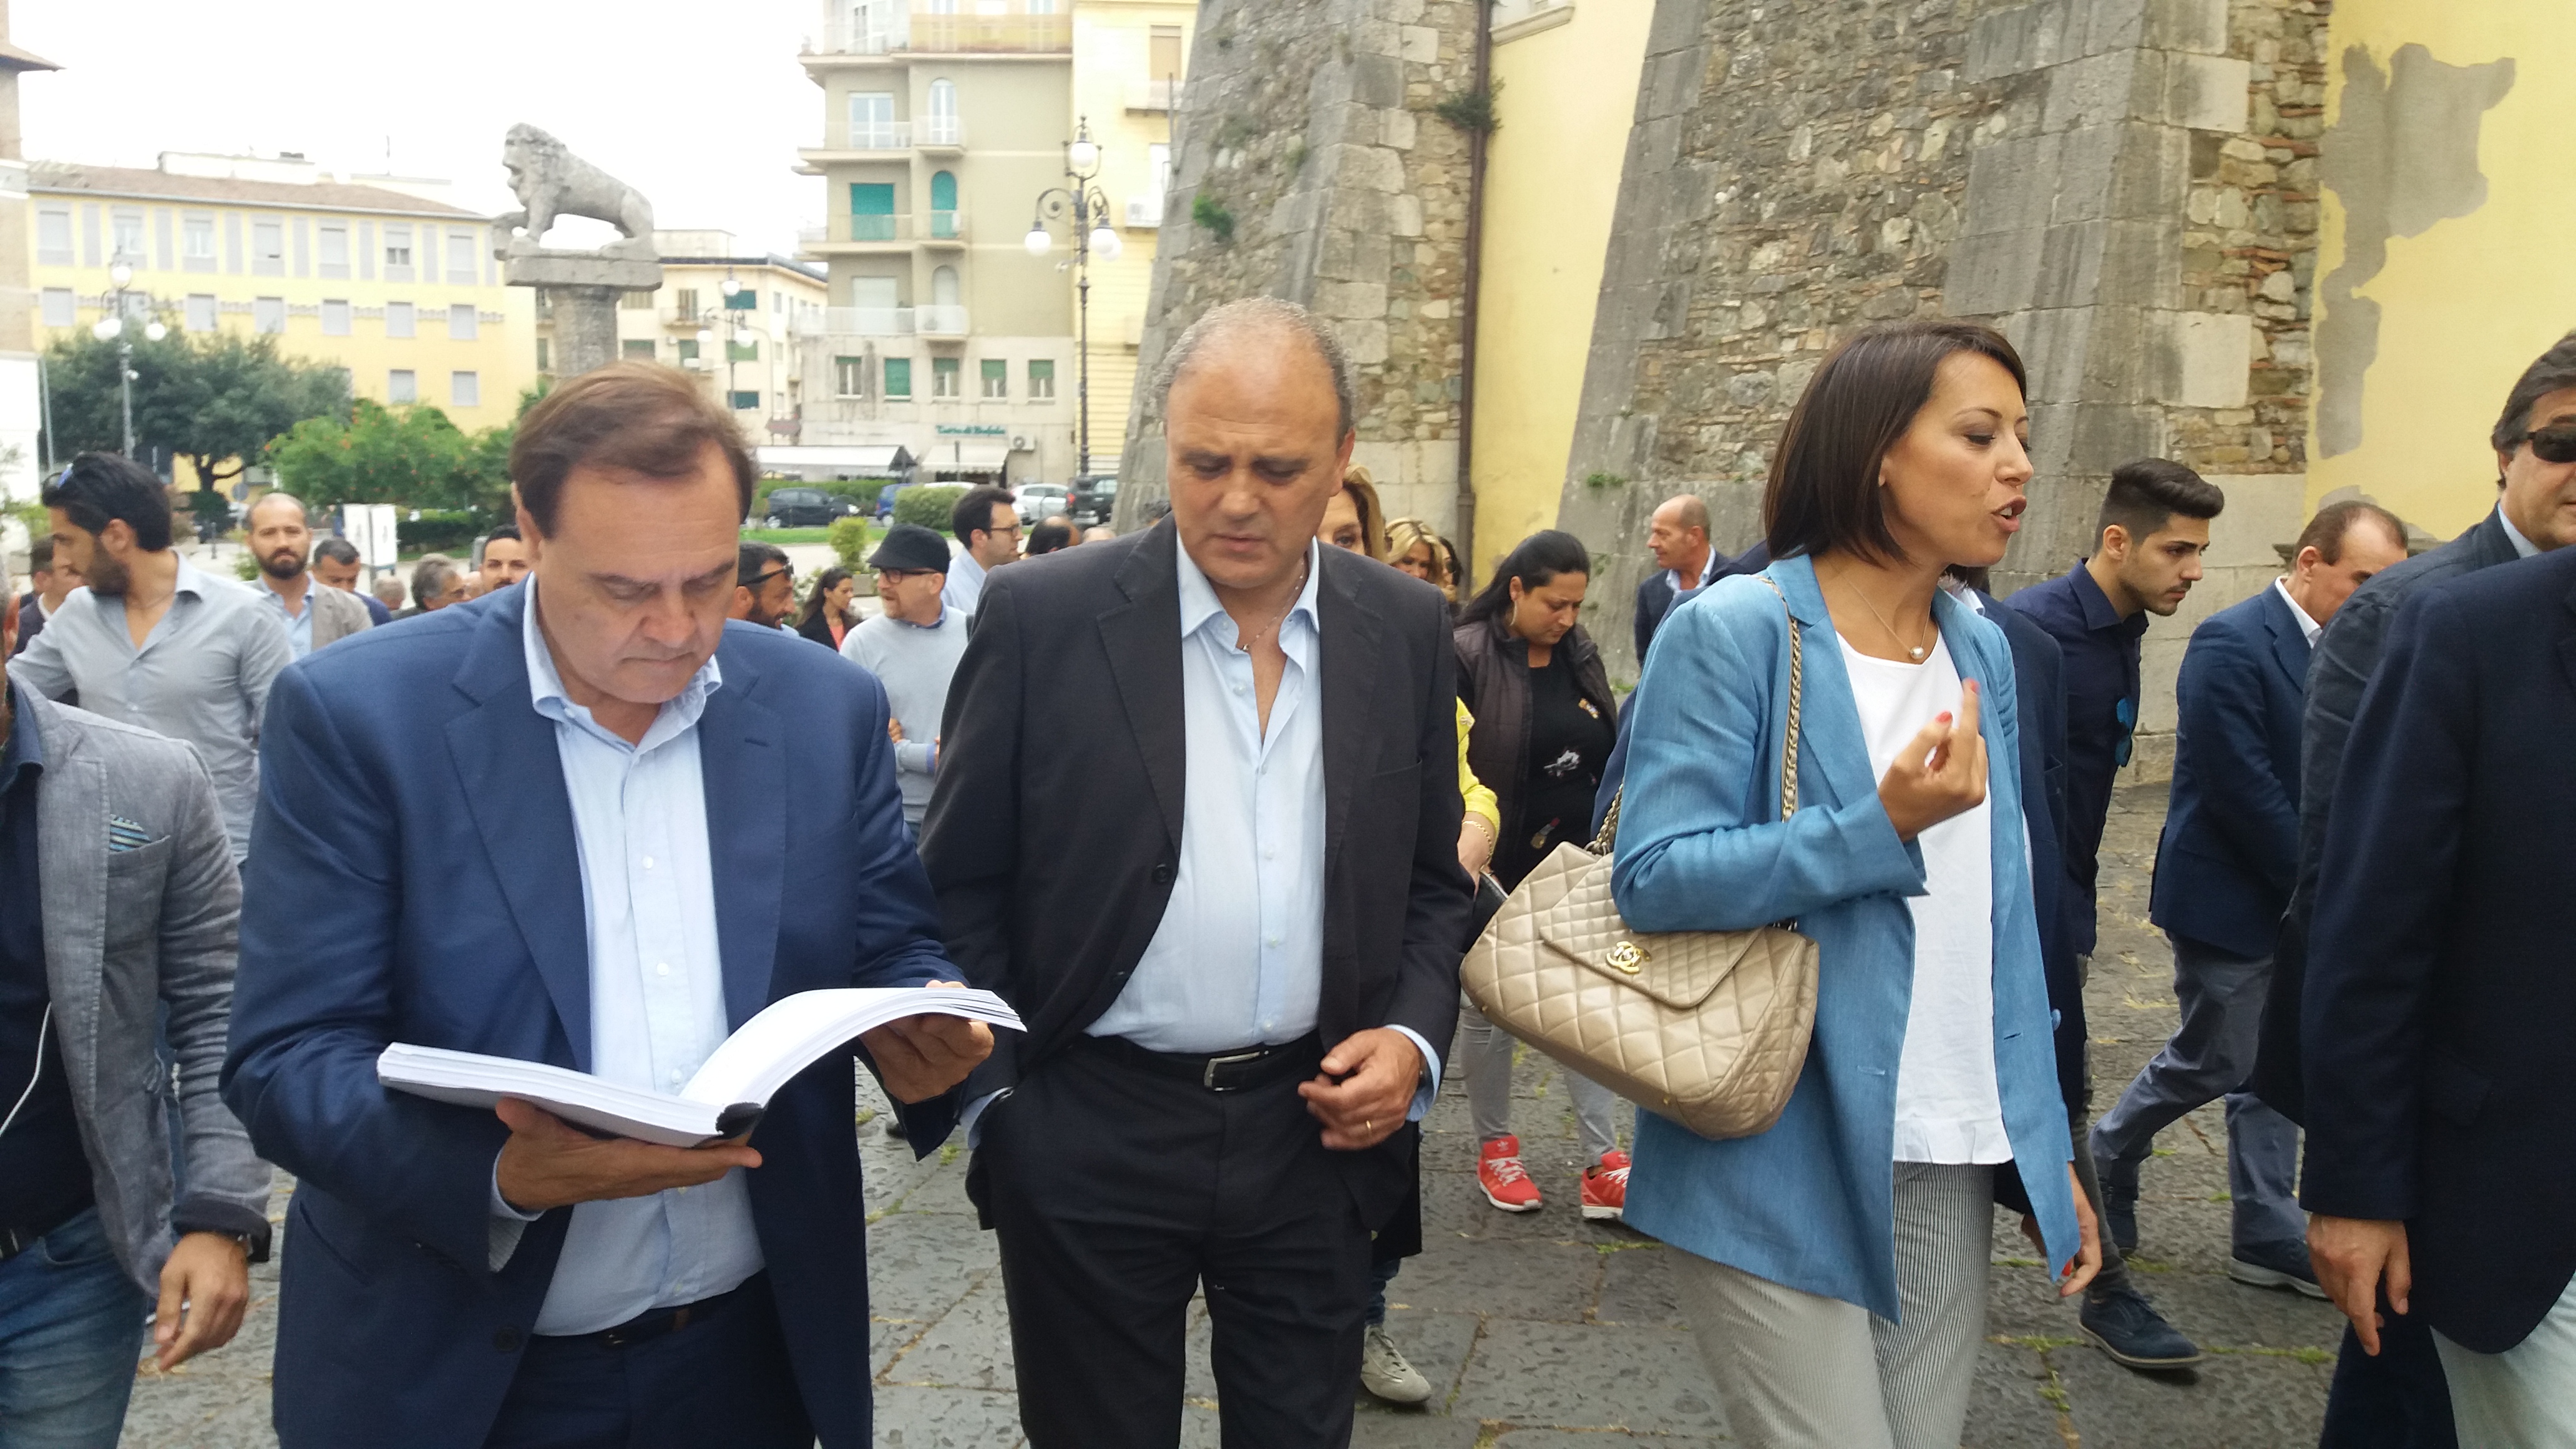 Mastella e De Girolamo rispondono a De Caro: ” ti aspettiamo in piazza”